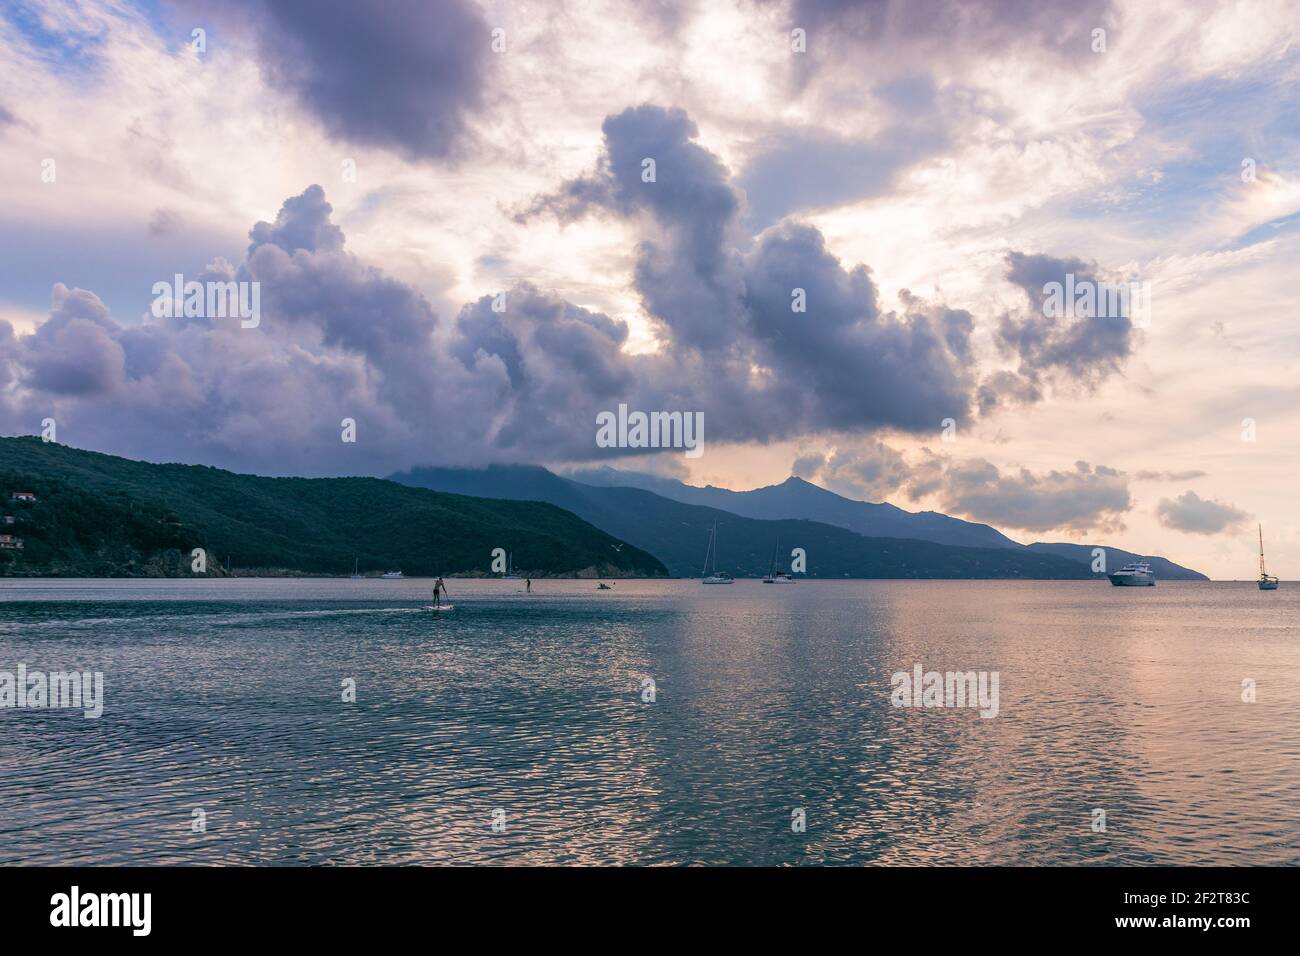 Spiaggia sull'Isola d'Elba al tramonto, nuvole bellissime e mare calmo. Toscana, Italia Foto Stock